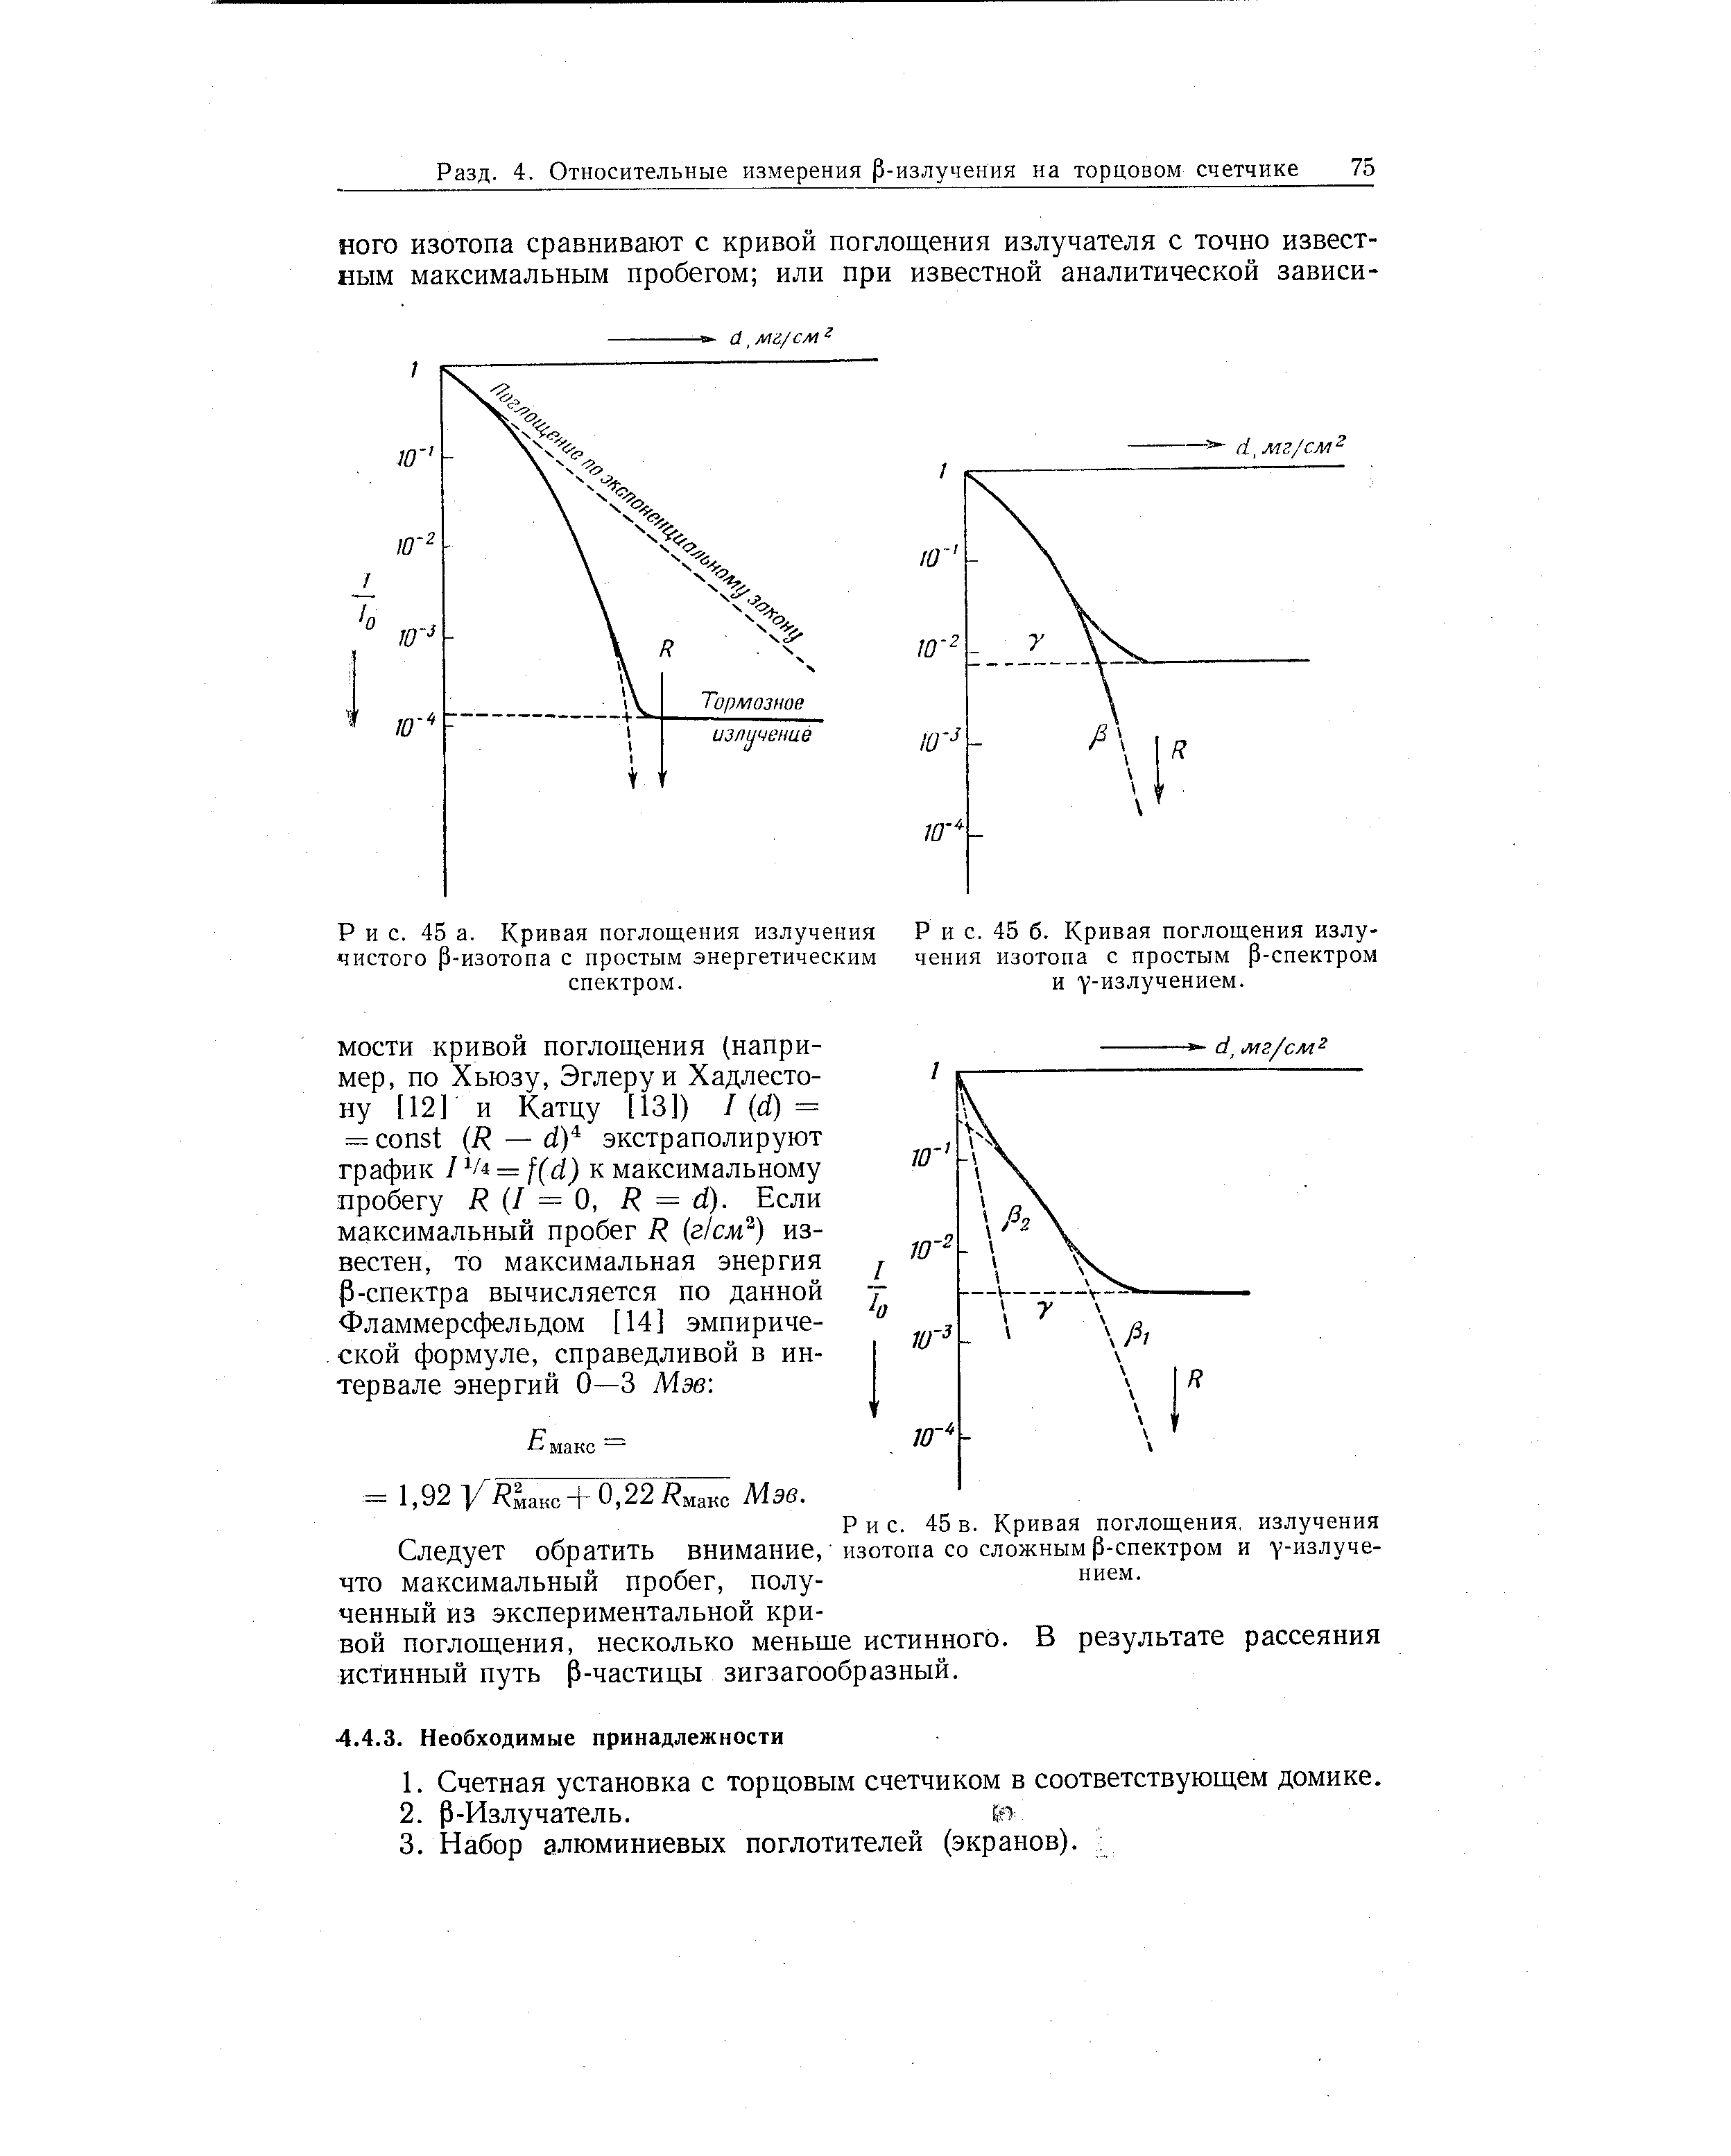 Кривая поглощения излучения изотопа с простым р-спектром и Y-излучением.